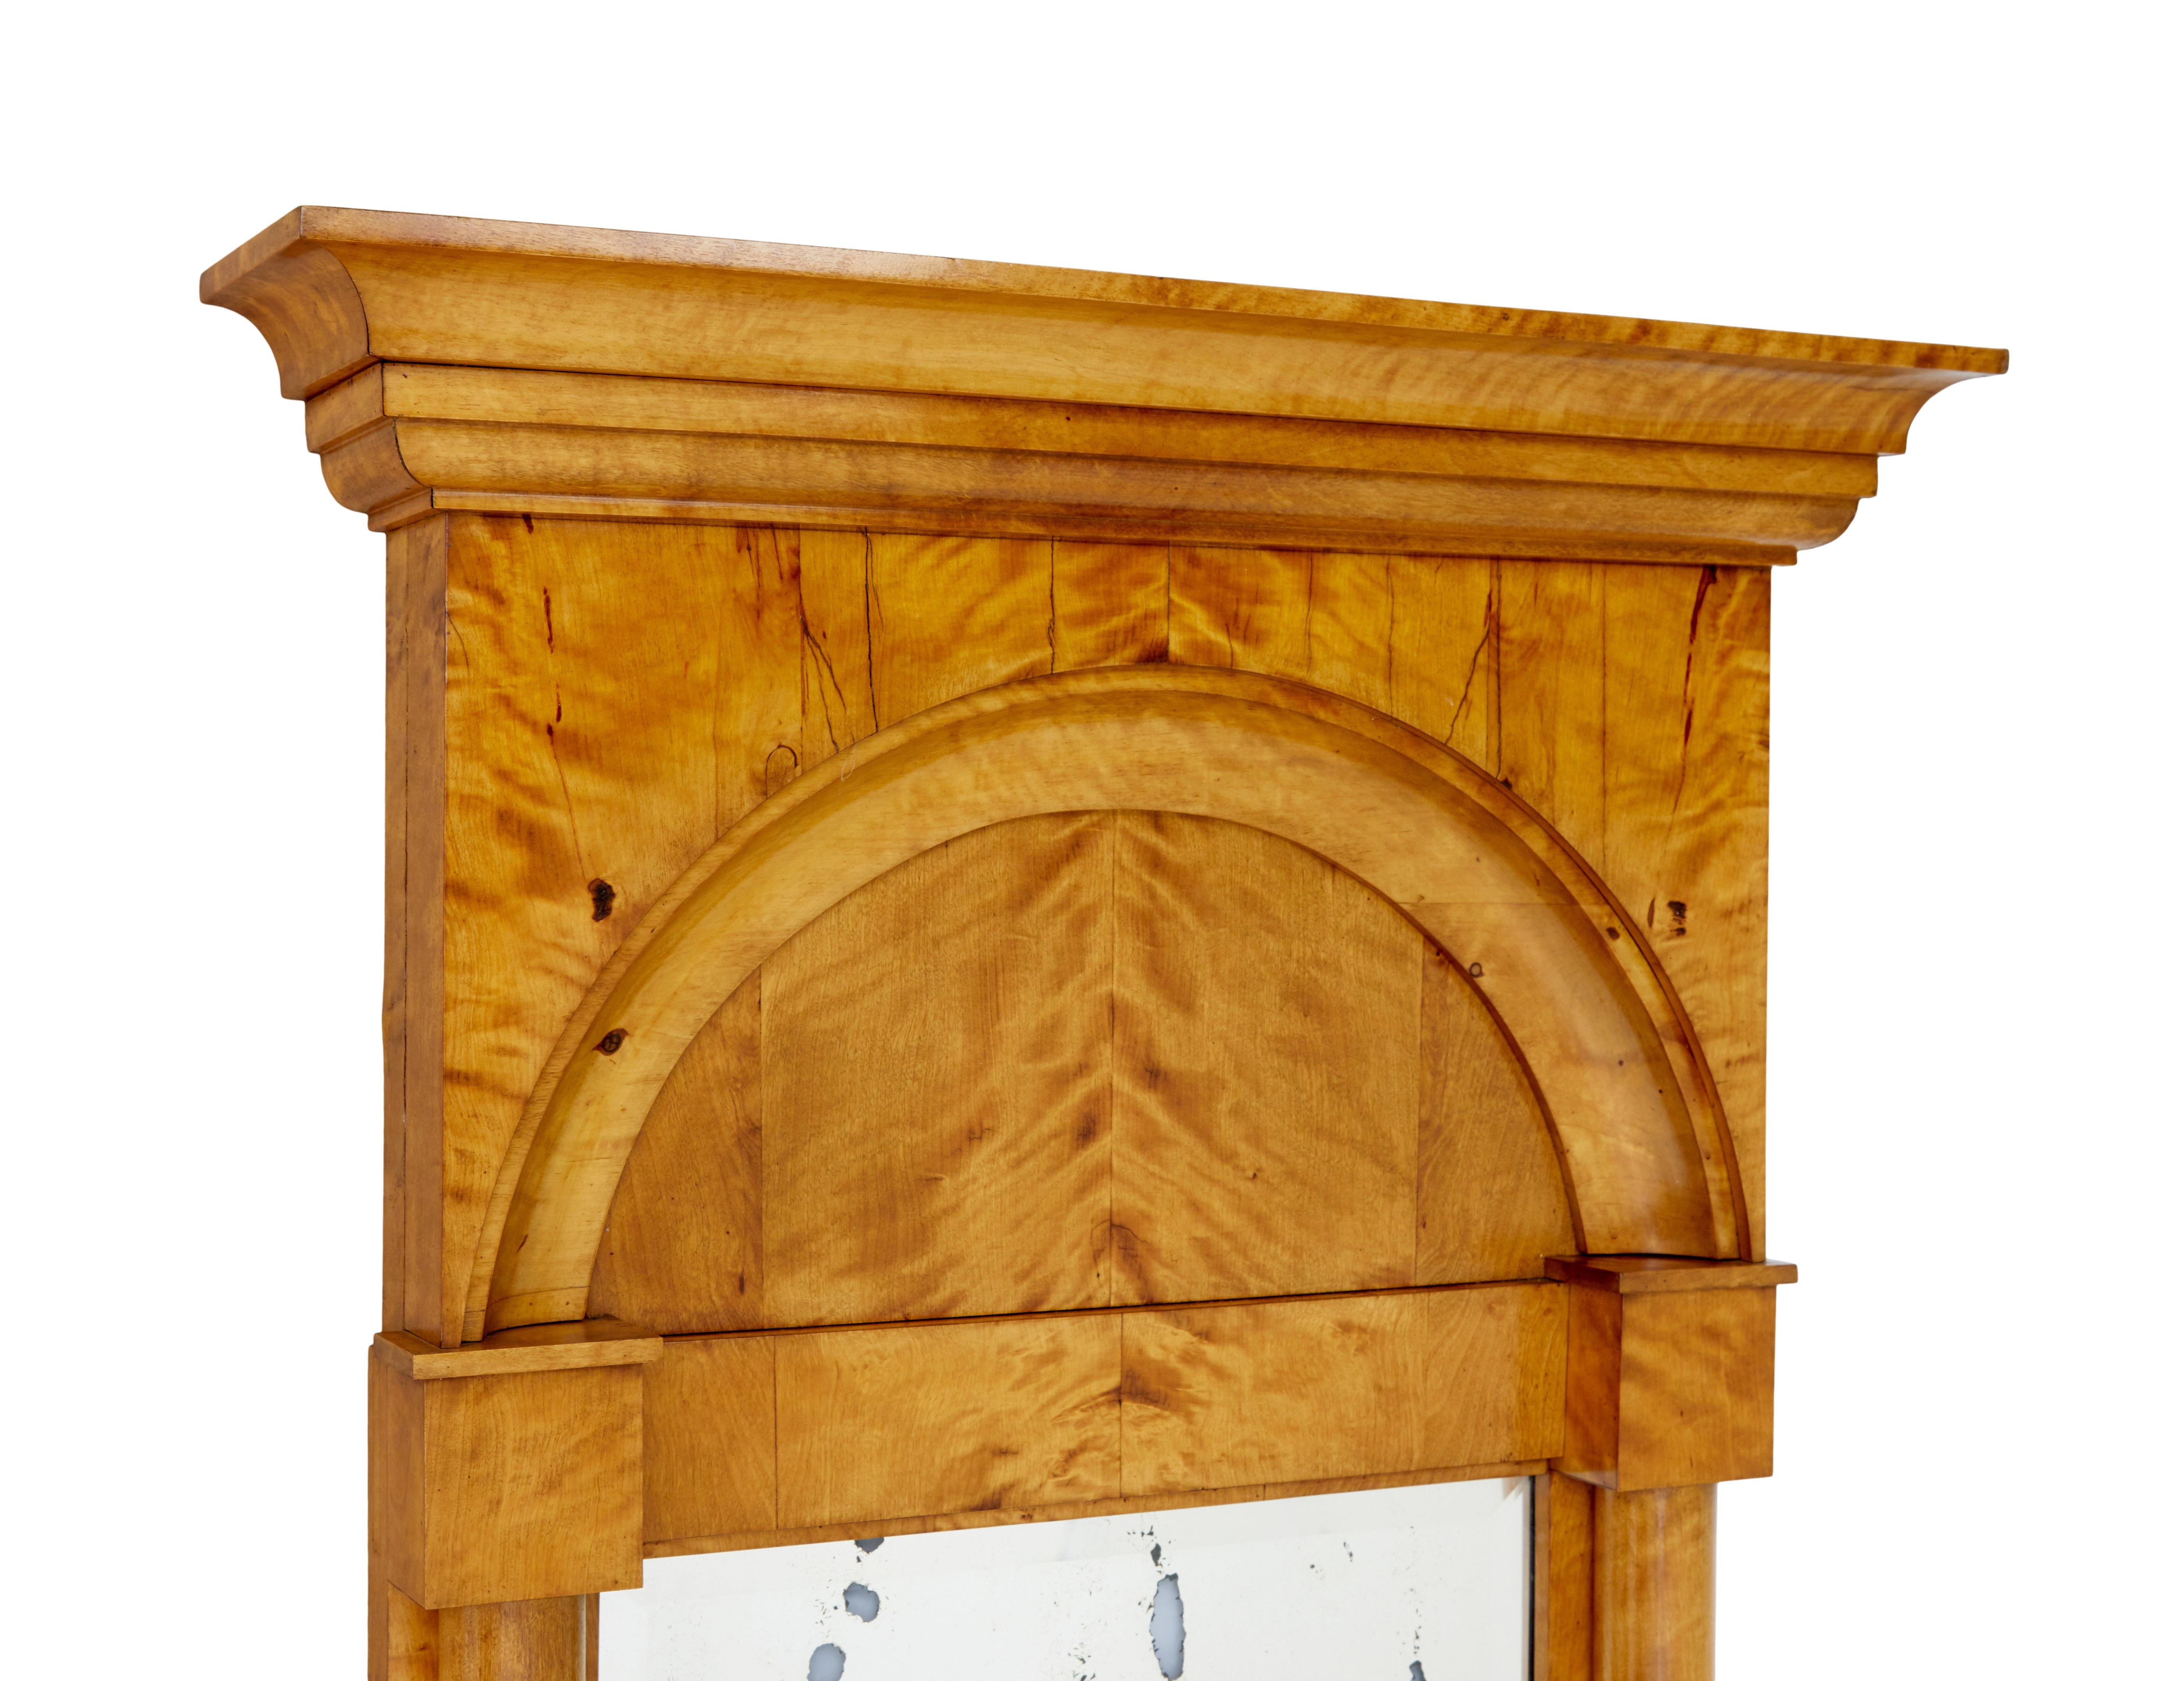 Schwedischer Birkenspiegel aus dem späten 19. Jahrhundert, um 1890.

Feiner architektonischer Pfeilerspiegel aus Birke.

Reichlich goldene Empire-Revival-Birke, mit architektonischem Gesims.  Geformter Bogen, der die 2 Säulen verbindet, die auf